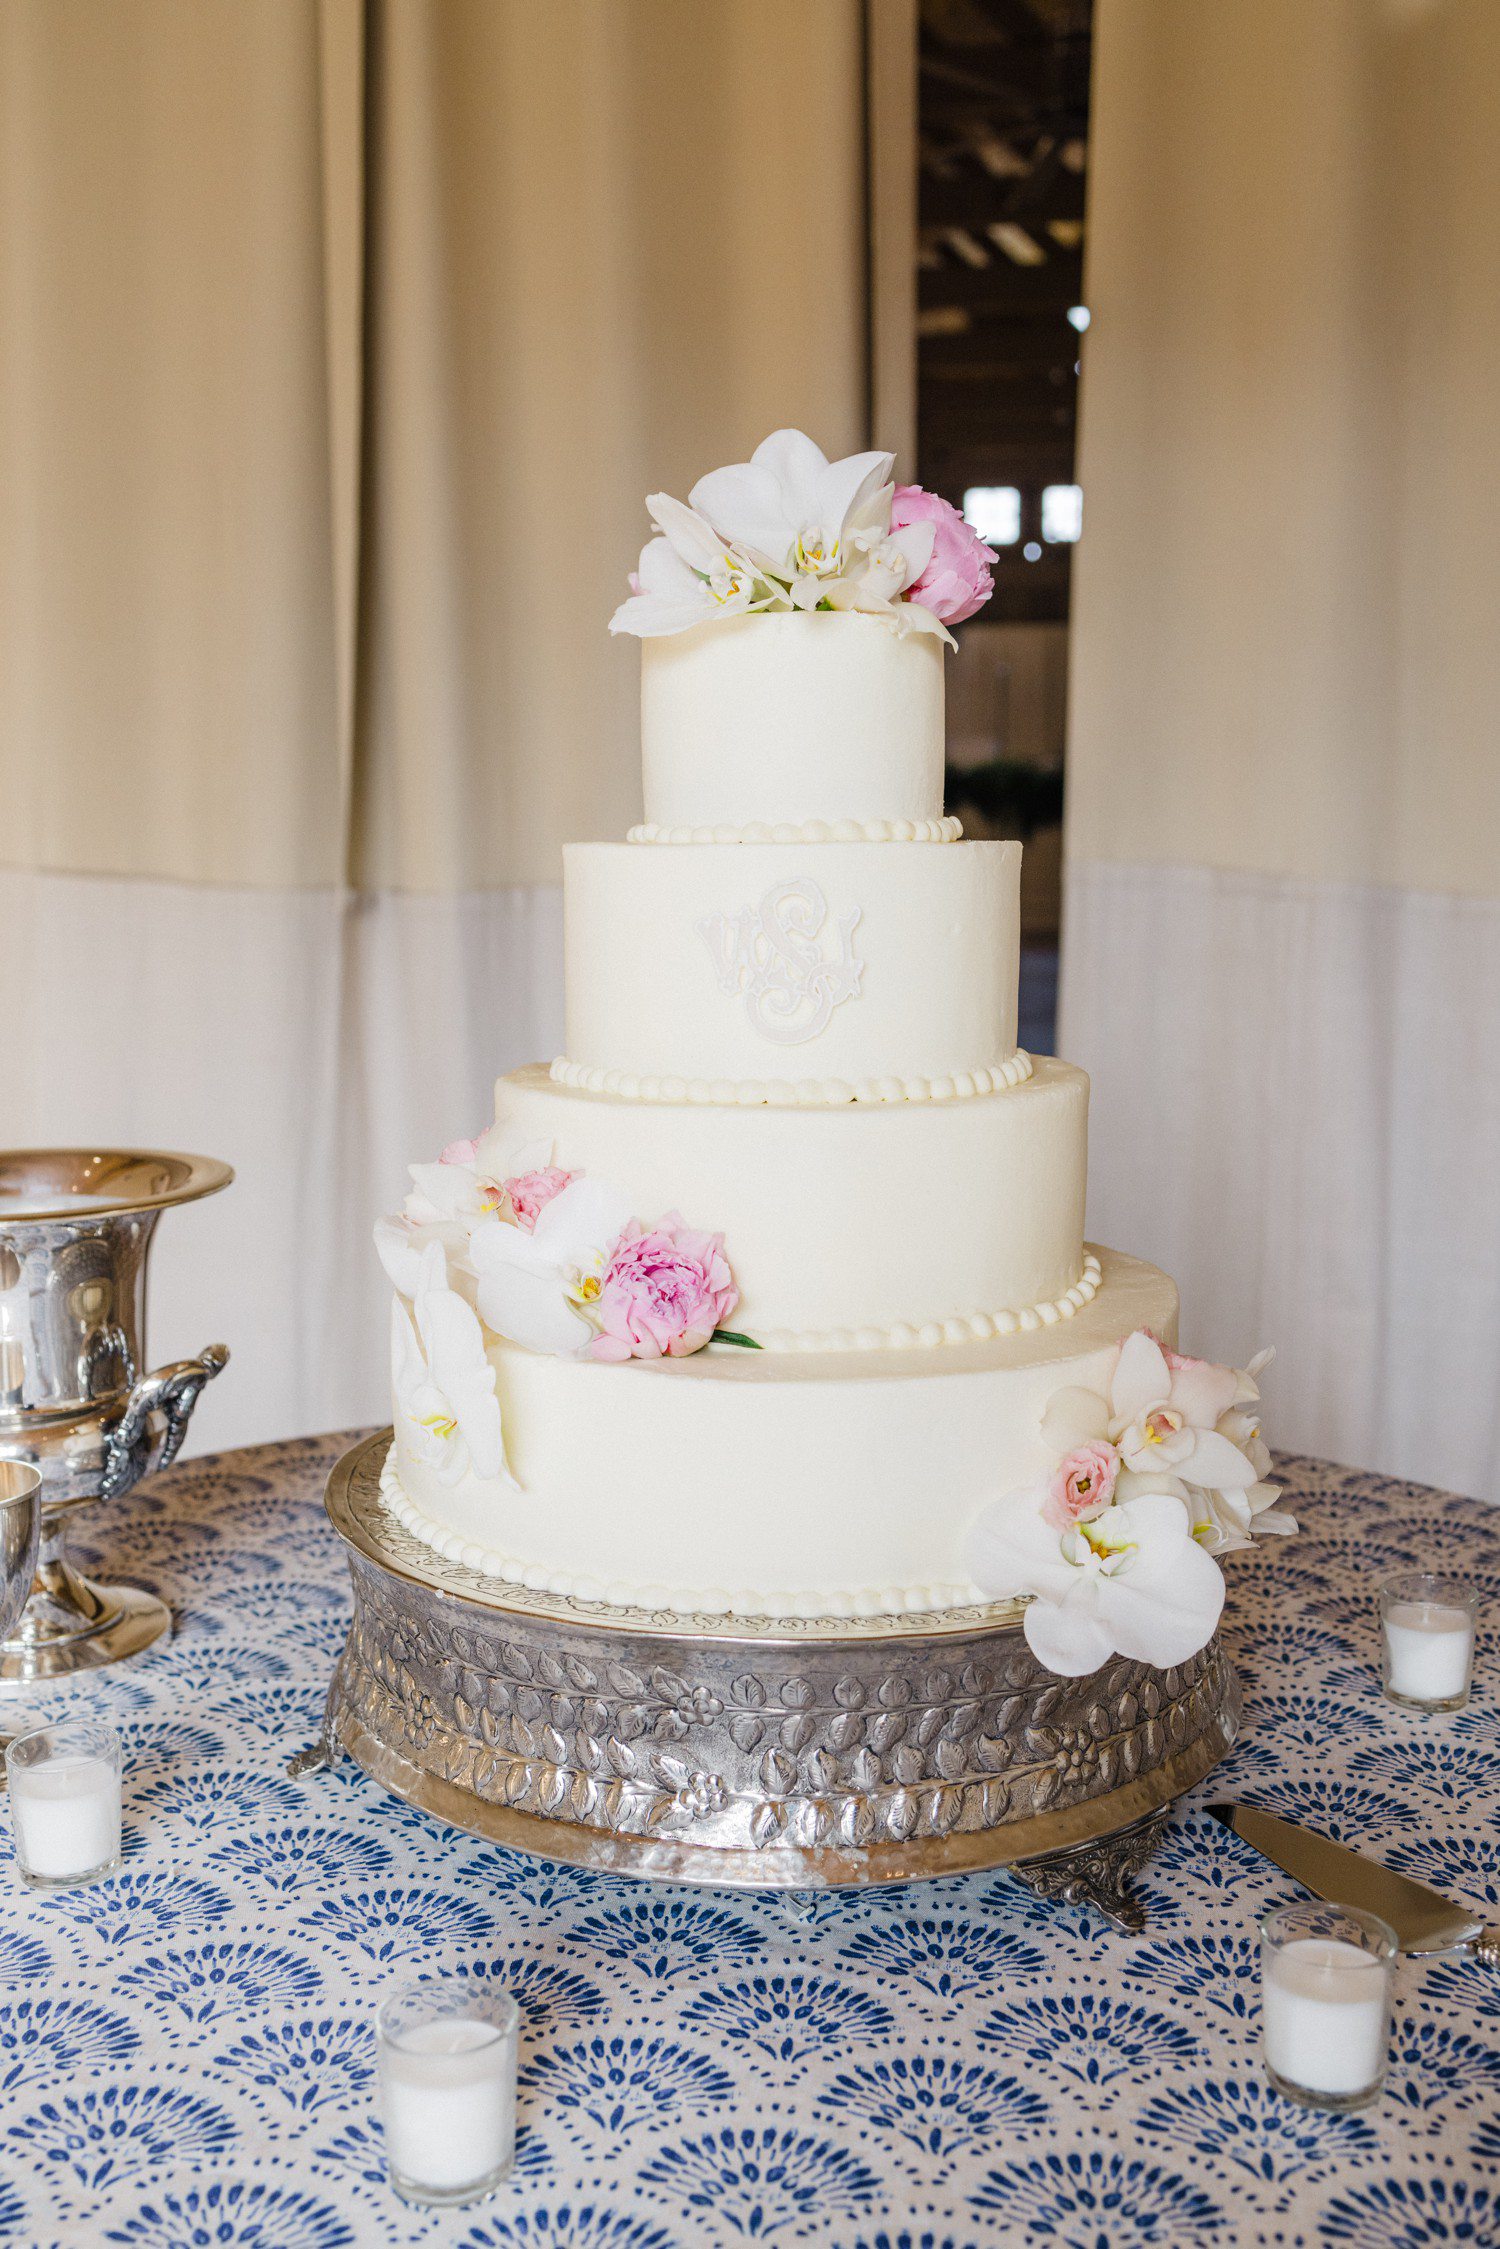 Three tier white wedding cake with white wedding crest. 